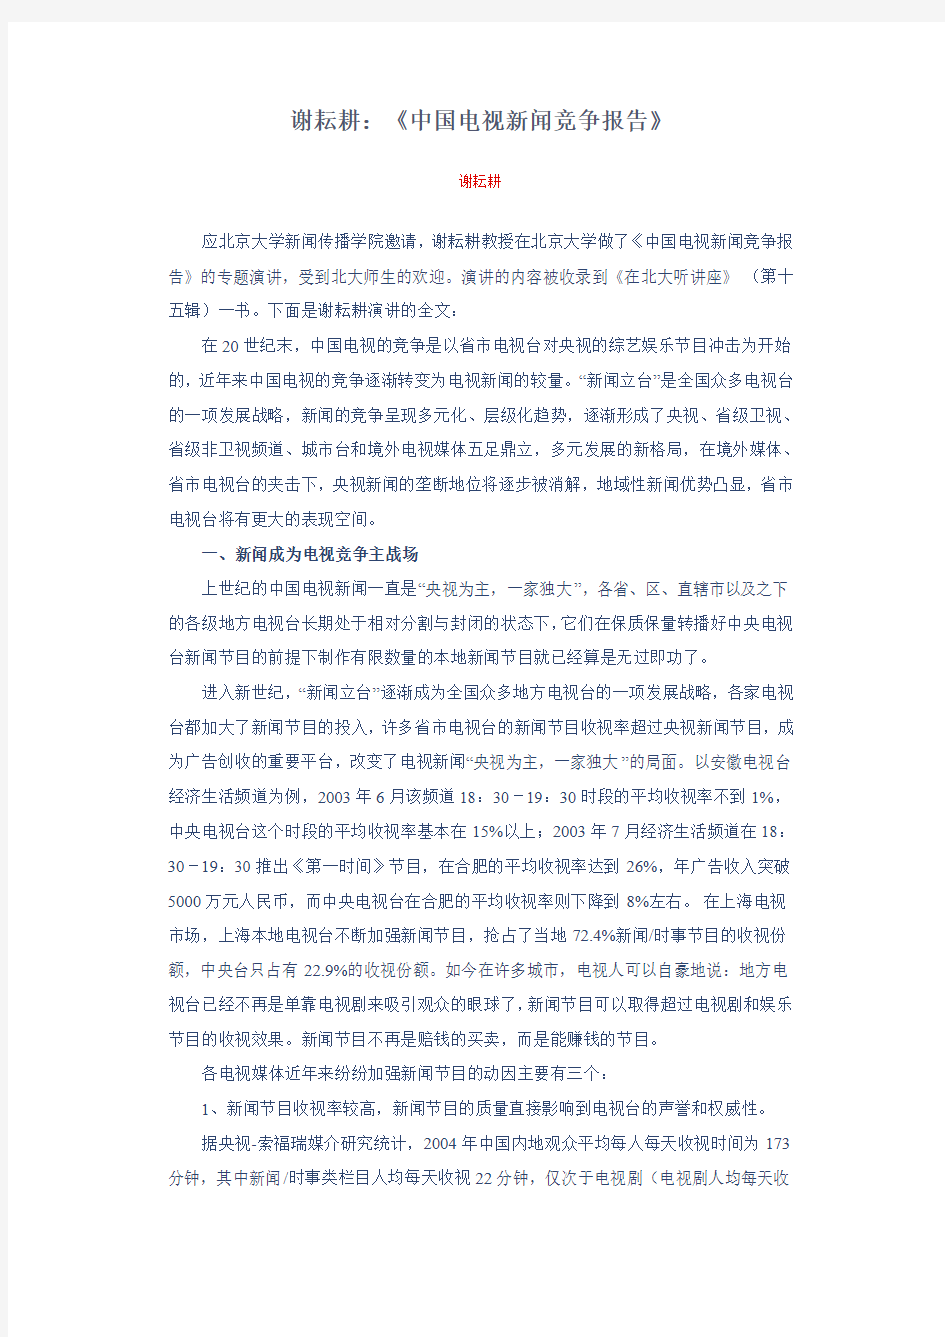 中国电视新闻竞争报告 - 上海交通大学人文艺术研究院